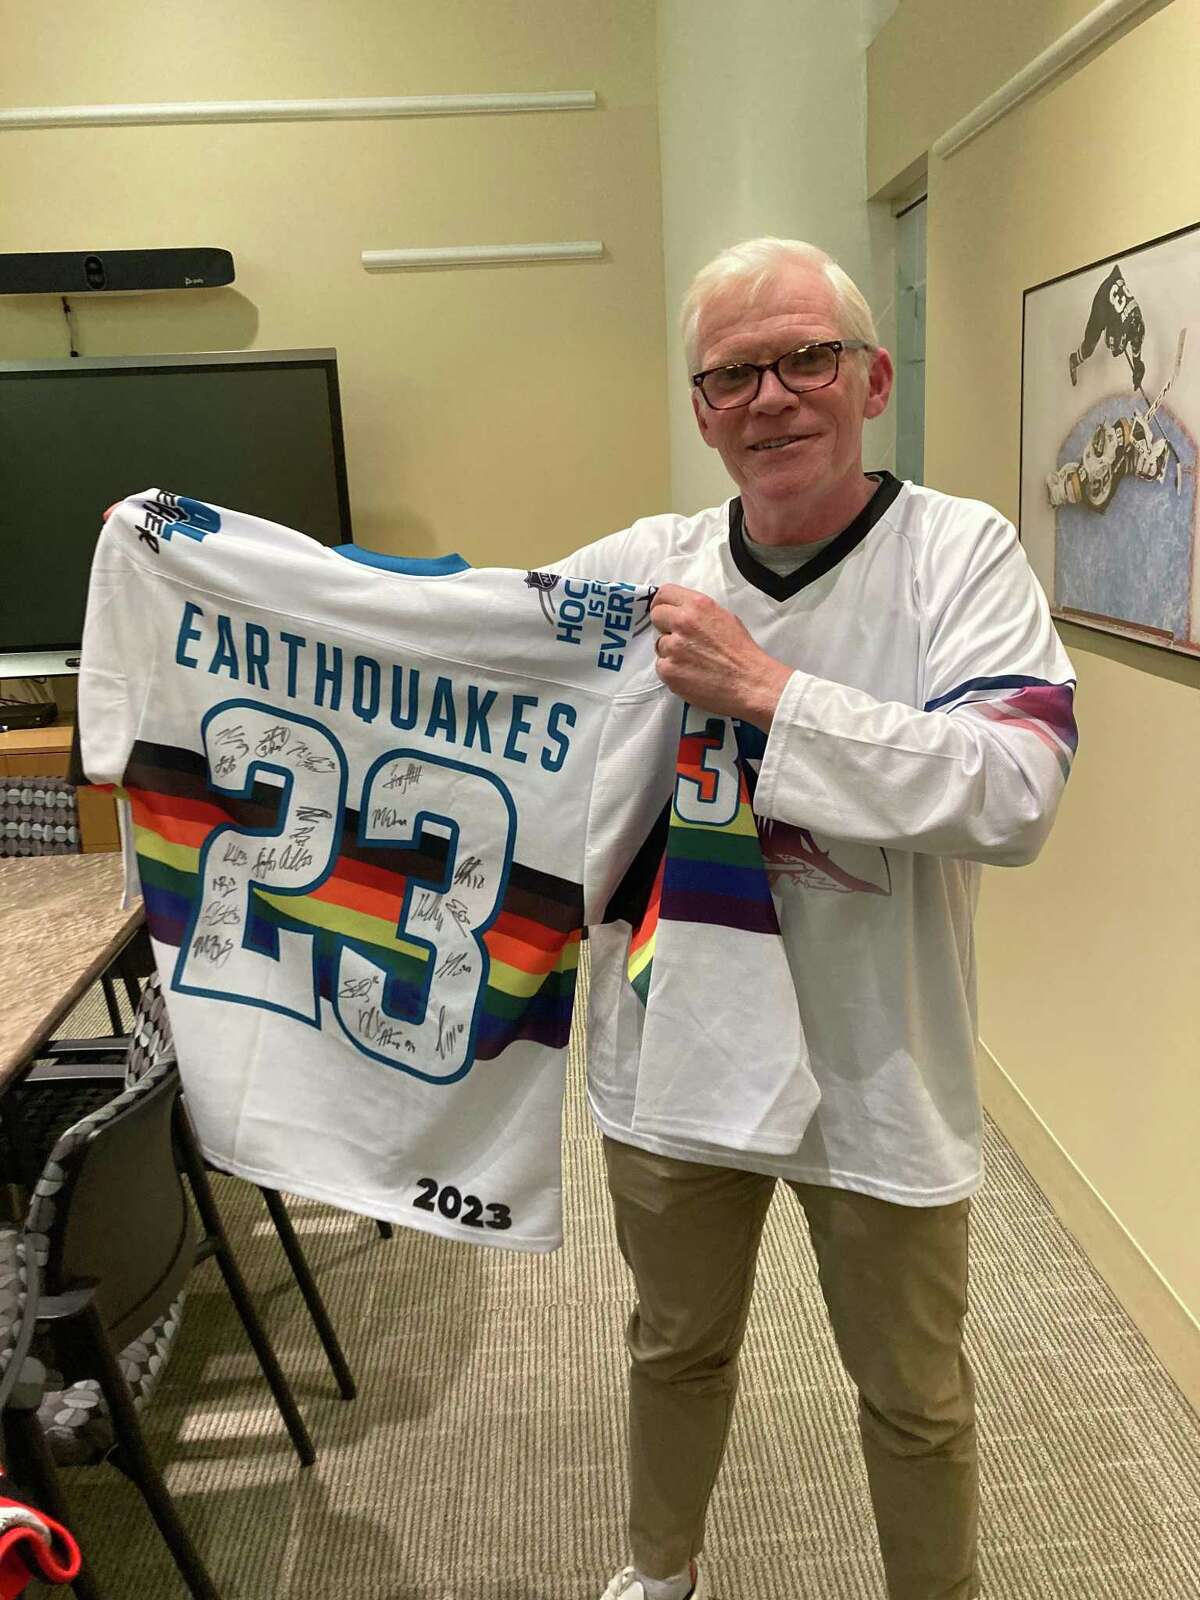 基兰·弗莱厄蒂(Kieran Flaherty)效力于旧金山地震队(San Francisco earthquake)，他展示了鲨鱼队球员的签名球衣。